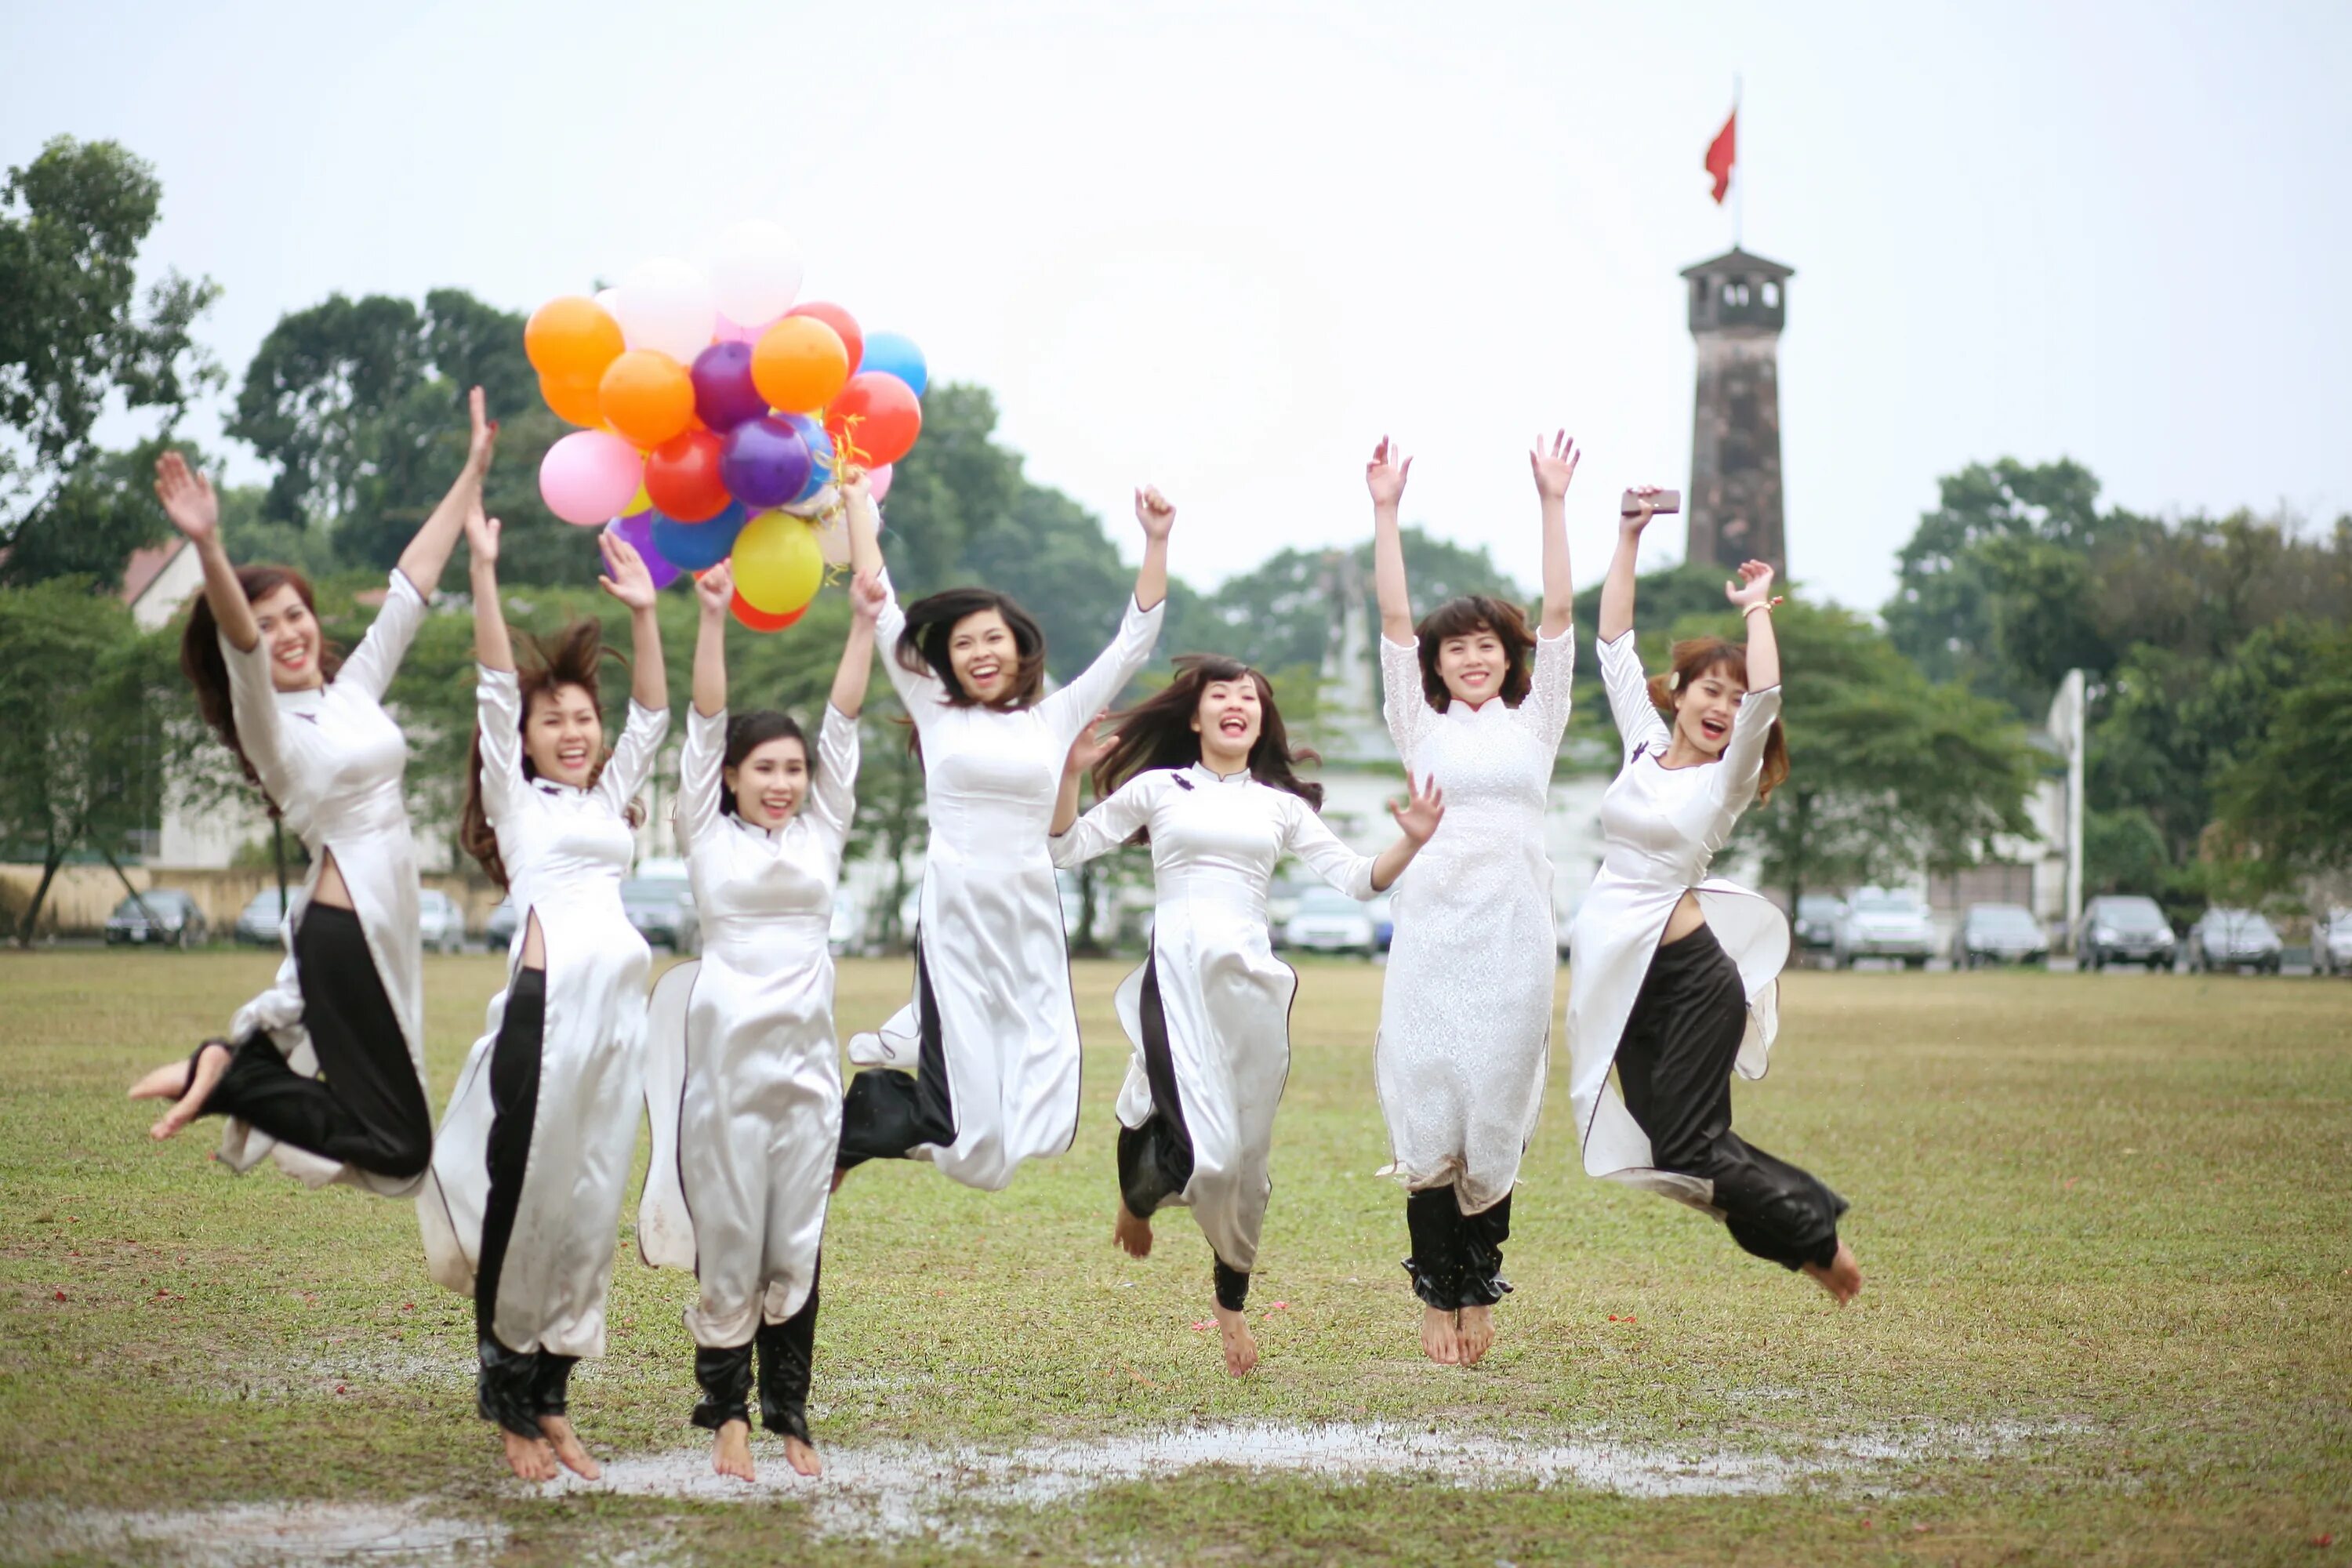 Танец с воздушными шарами. Групповая фотография в прыжке. Радость китайца. Невесомые танцы китайцев. Праздники Азии.